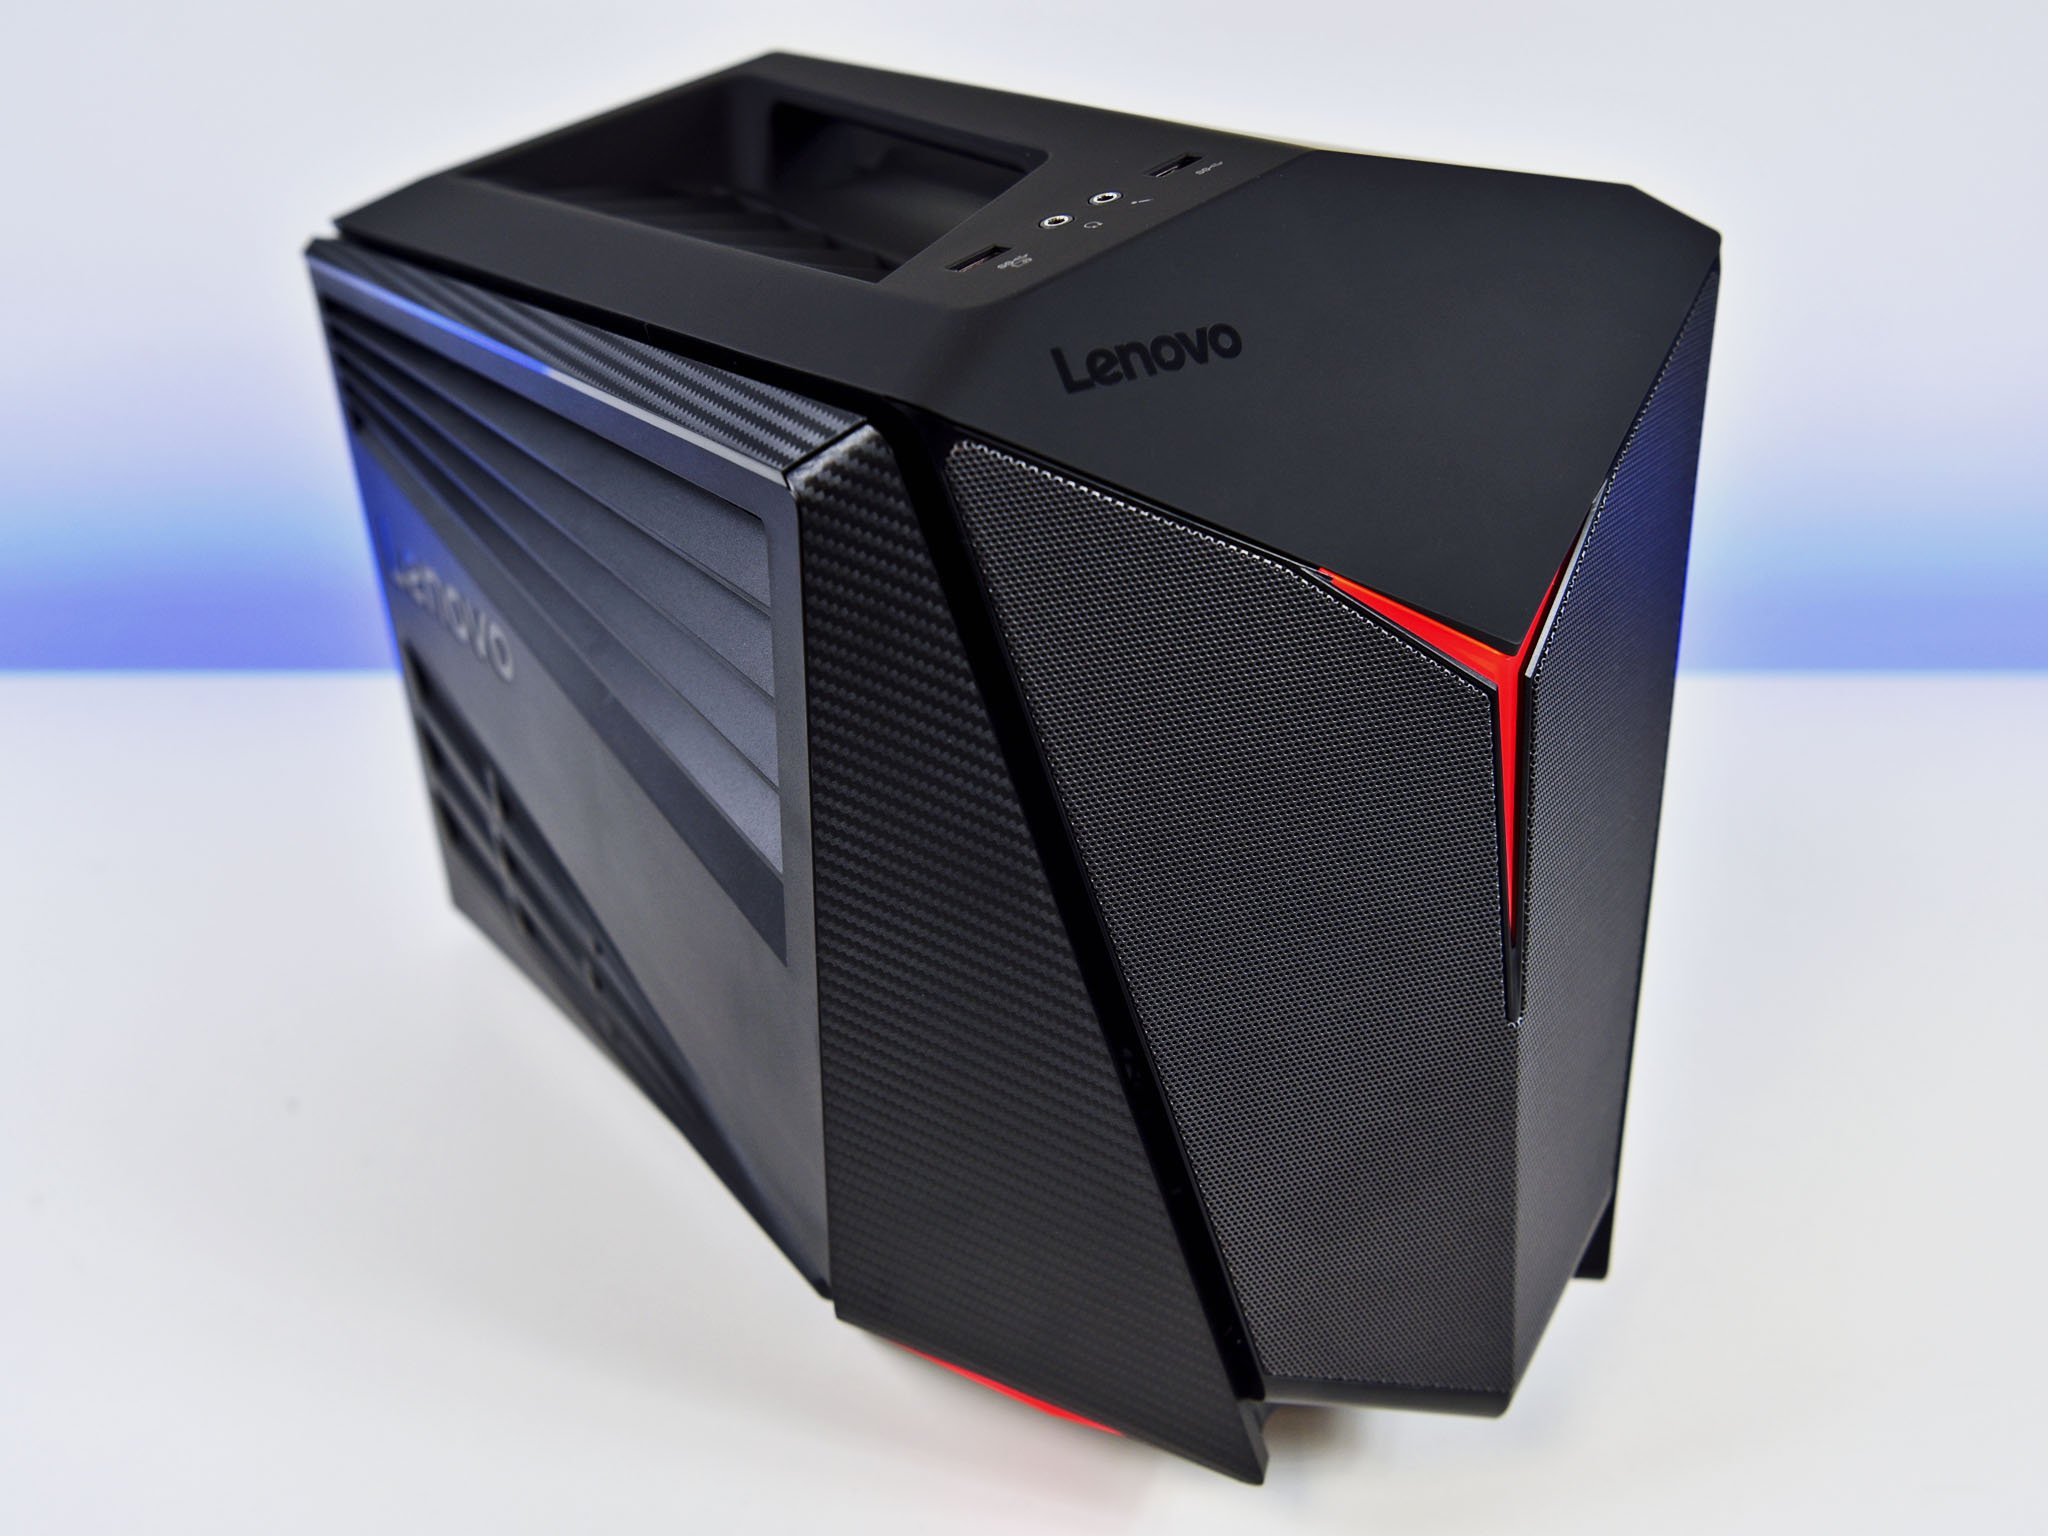 Lenovo IdeaCentre Y710 Cube, un CPU bastante potente y atractivo